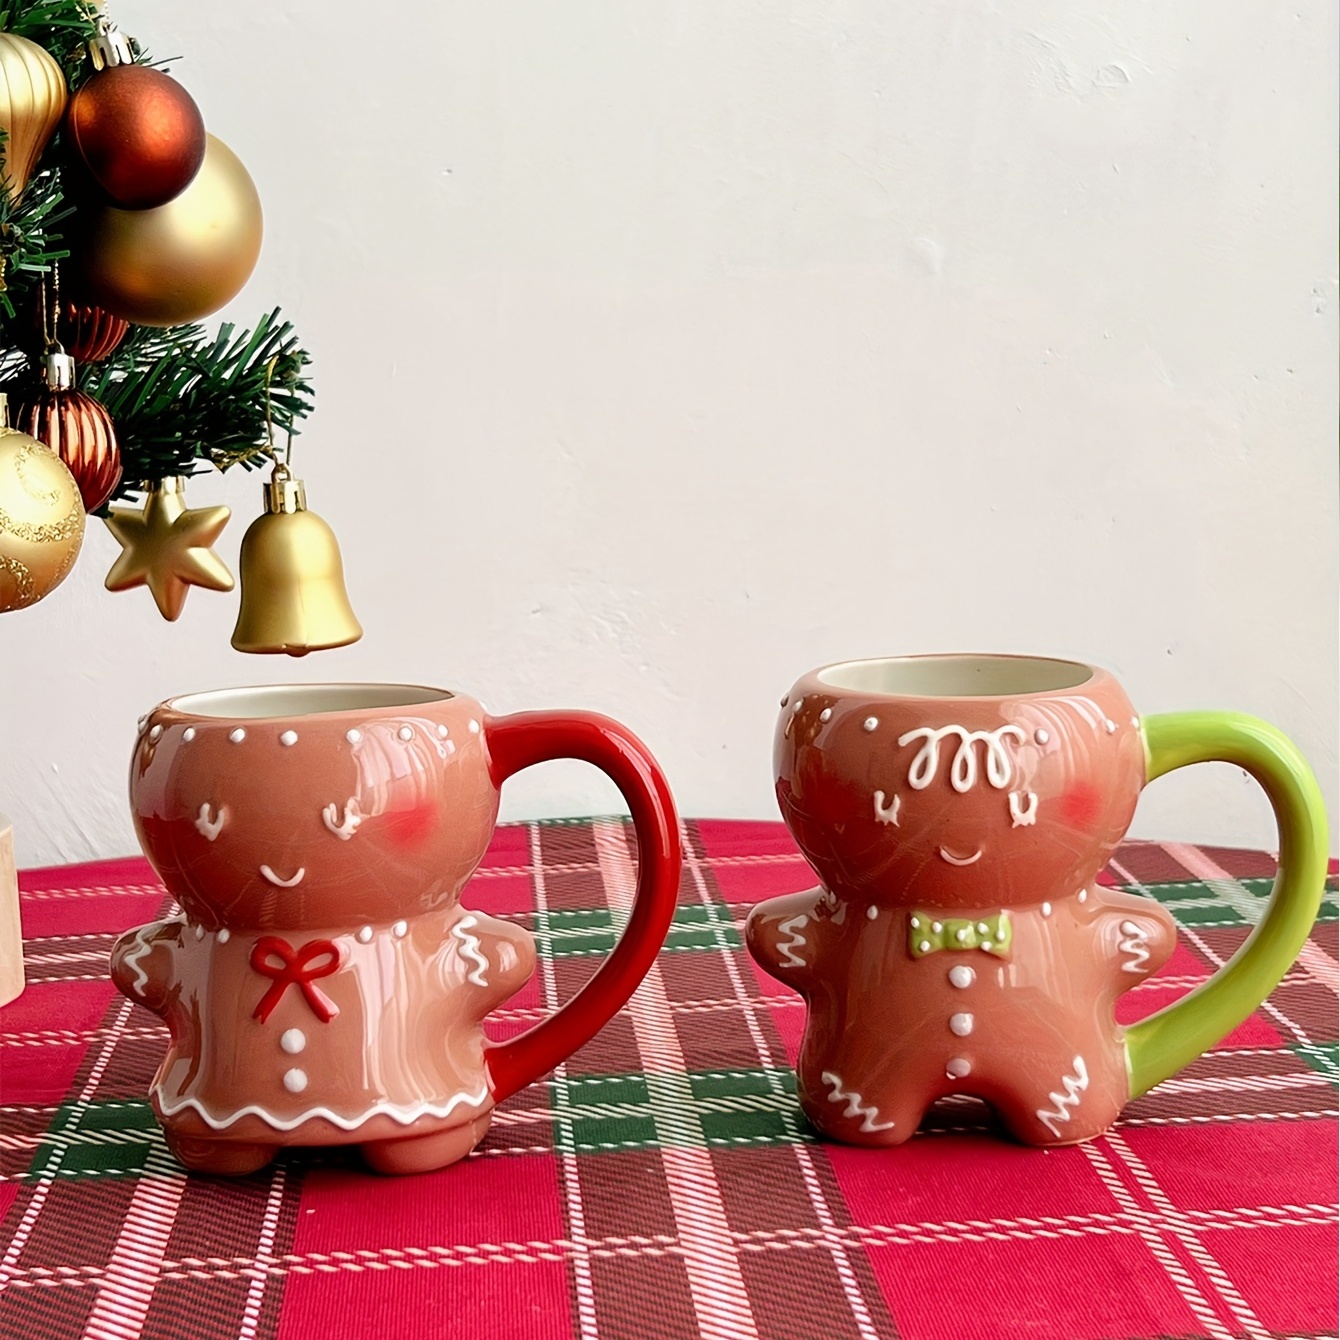 Christmas Coffee Mug With Lid And Straw, Cute Christmas Tree Ceramic Mug,  Winter Holiday Mug Gift Set, Novelty Mug With Handle, Christmas Cups Gifts  For Women, Men - Temu Belgium